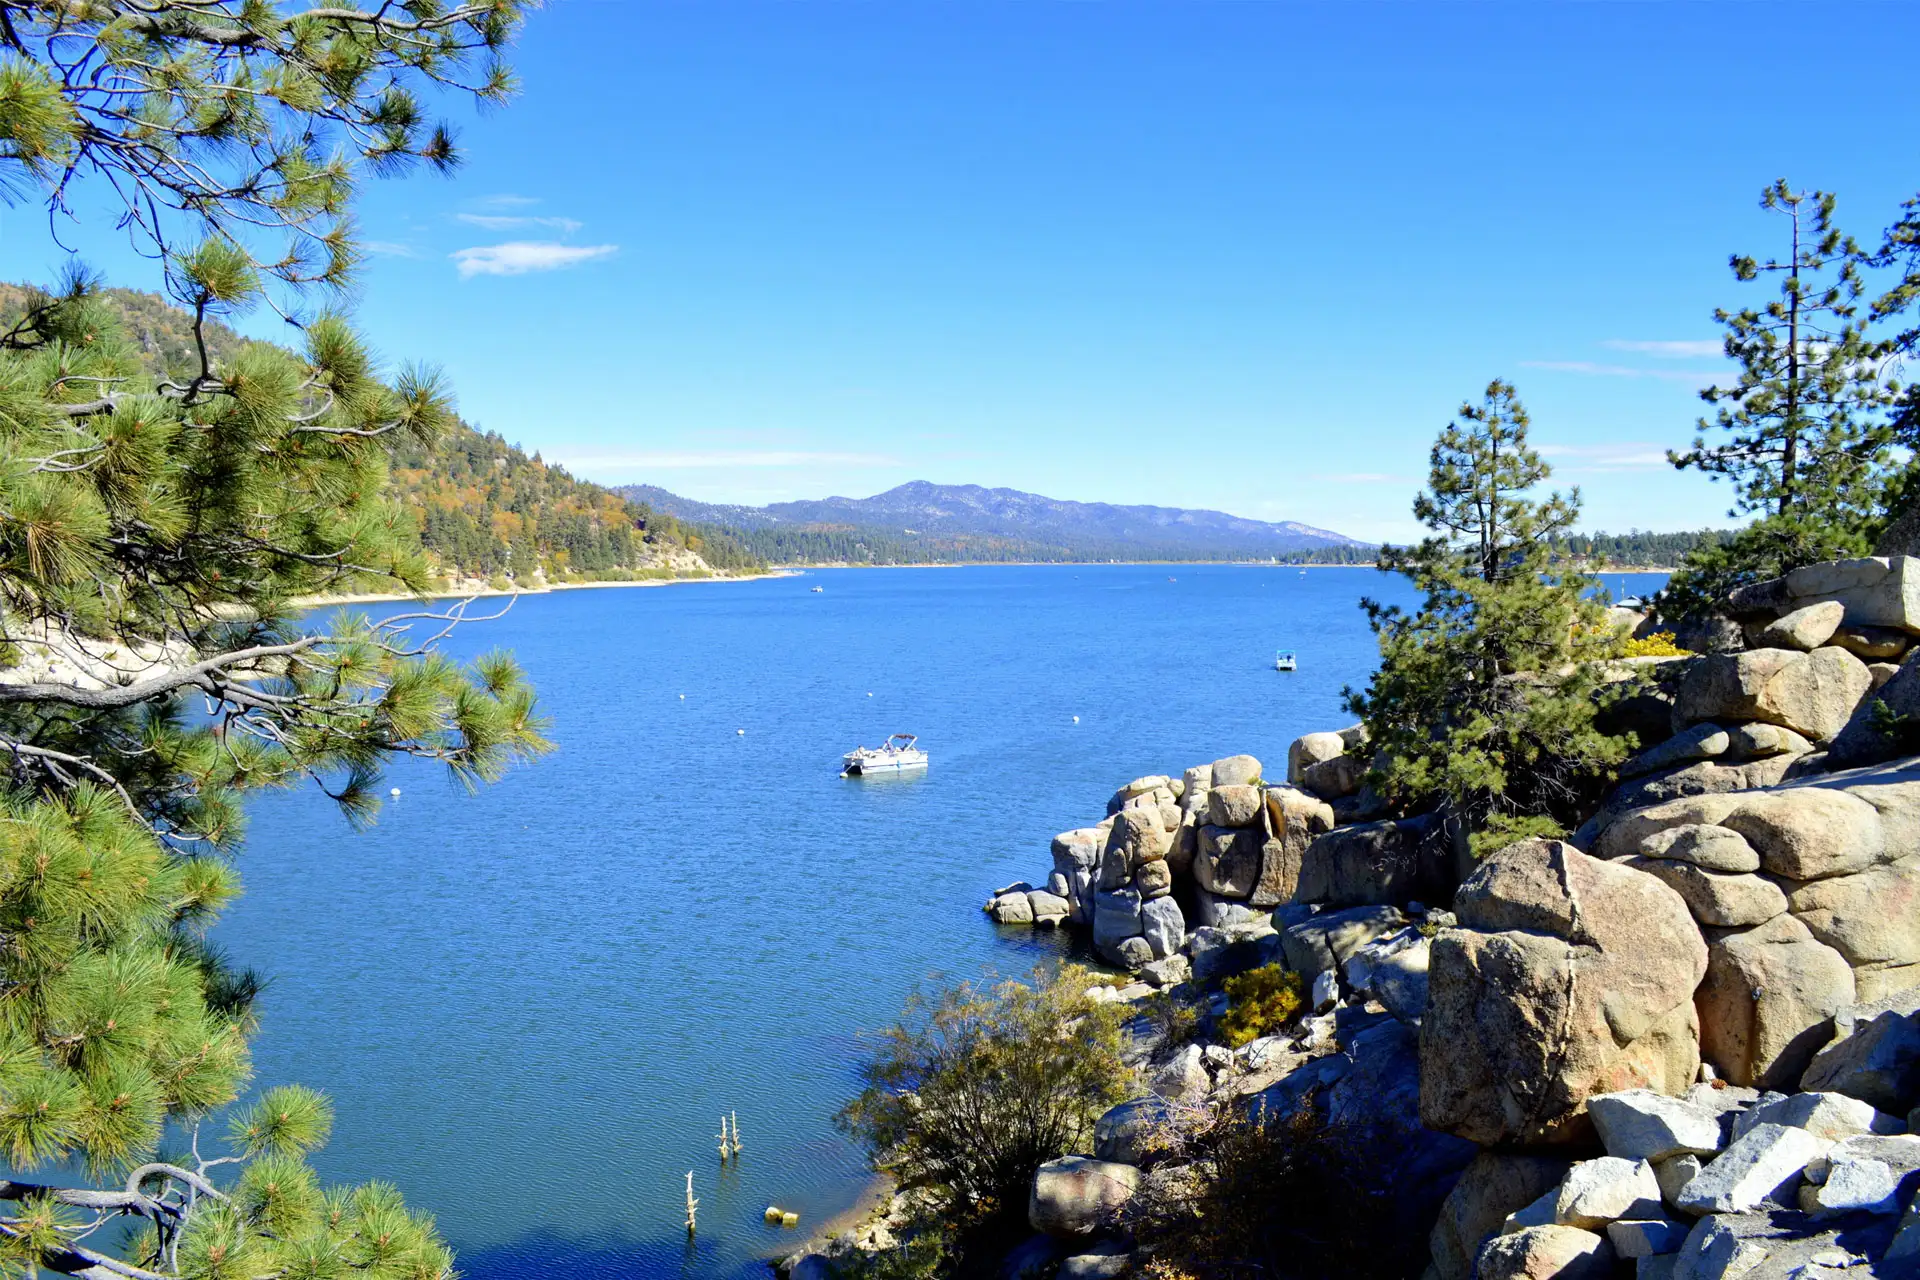 Big Bear Lake, California; Courtesy of divanov/Shutterstock.com